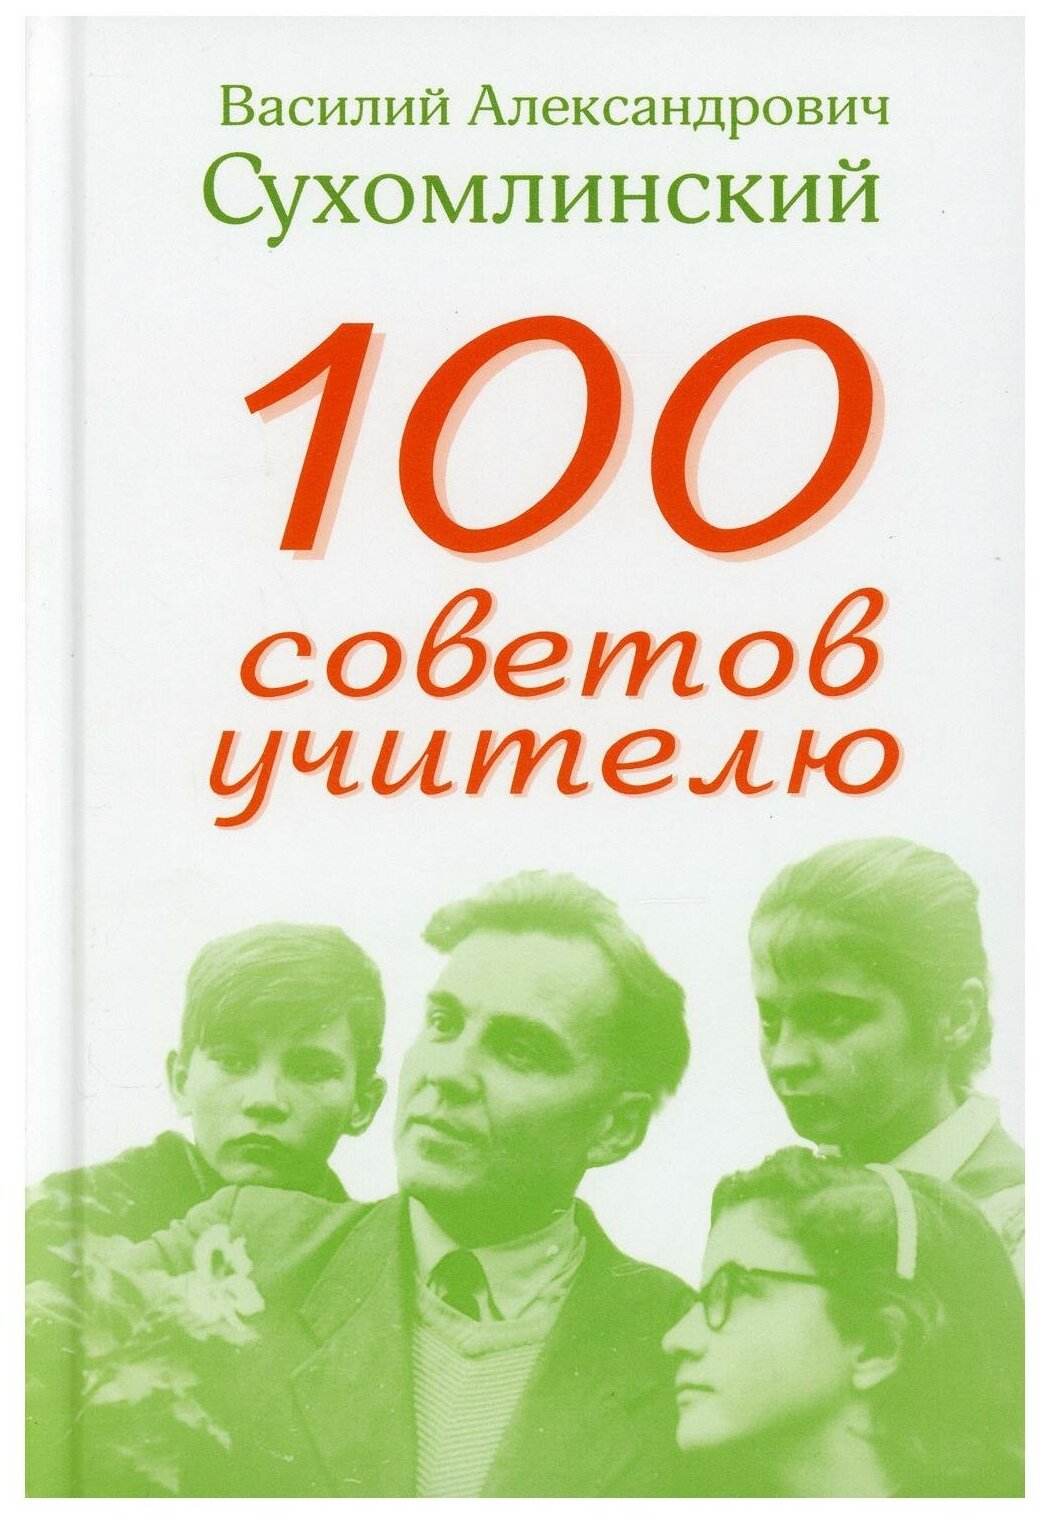 100 советов учителю (Сухомлинский Василий Александрович) - фото №1